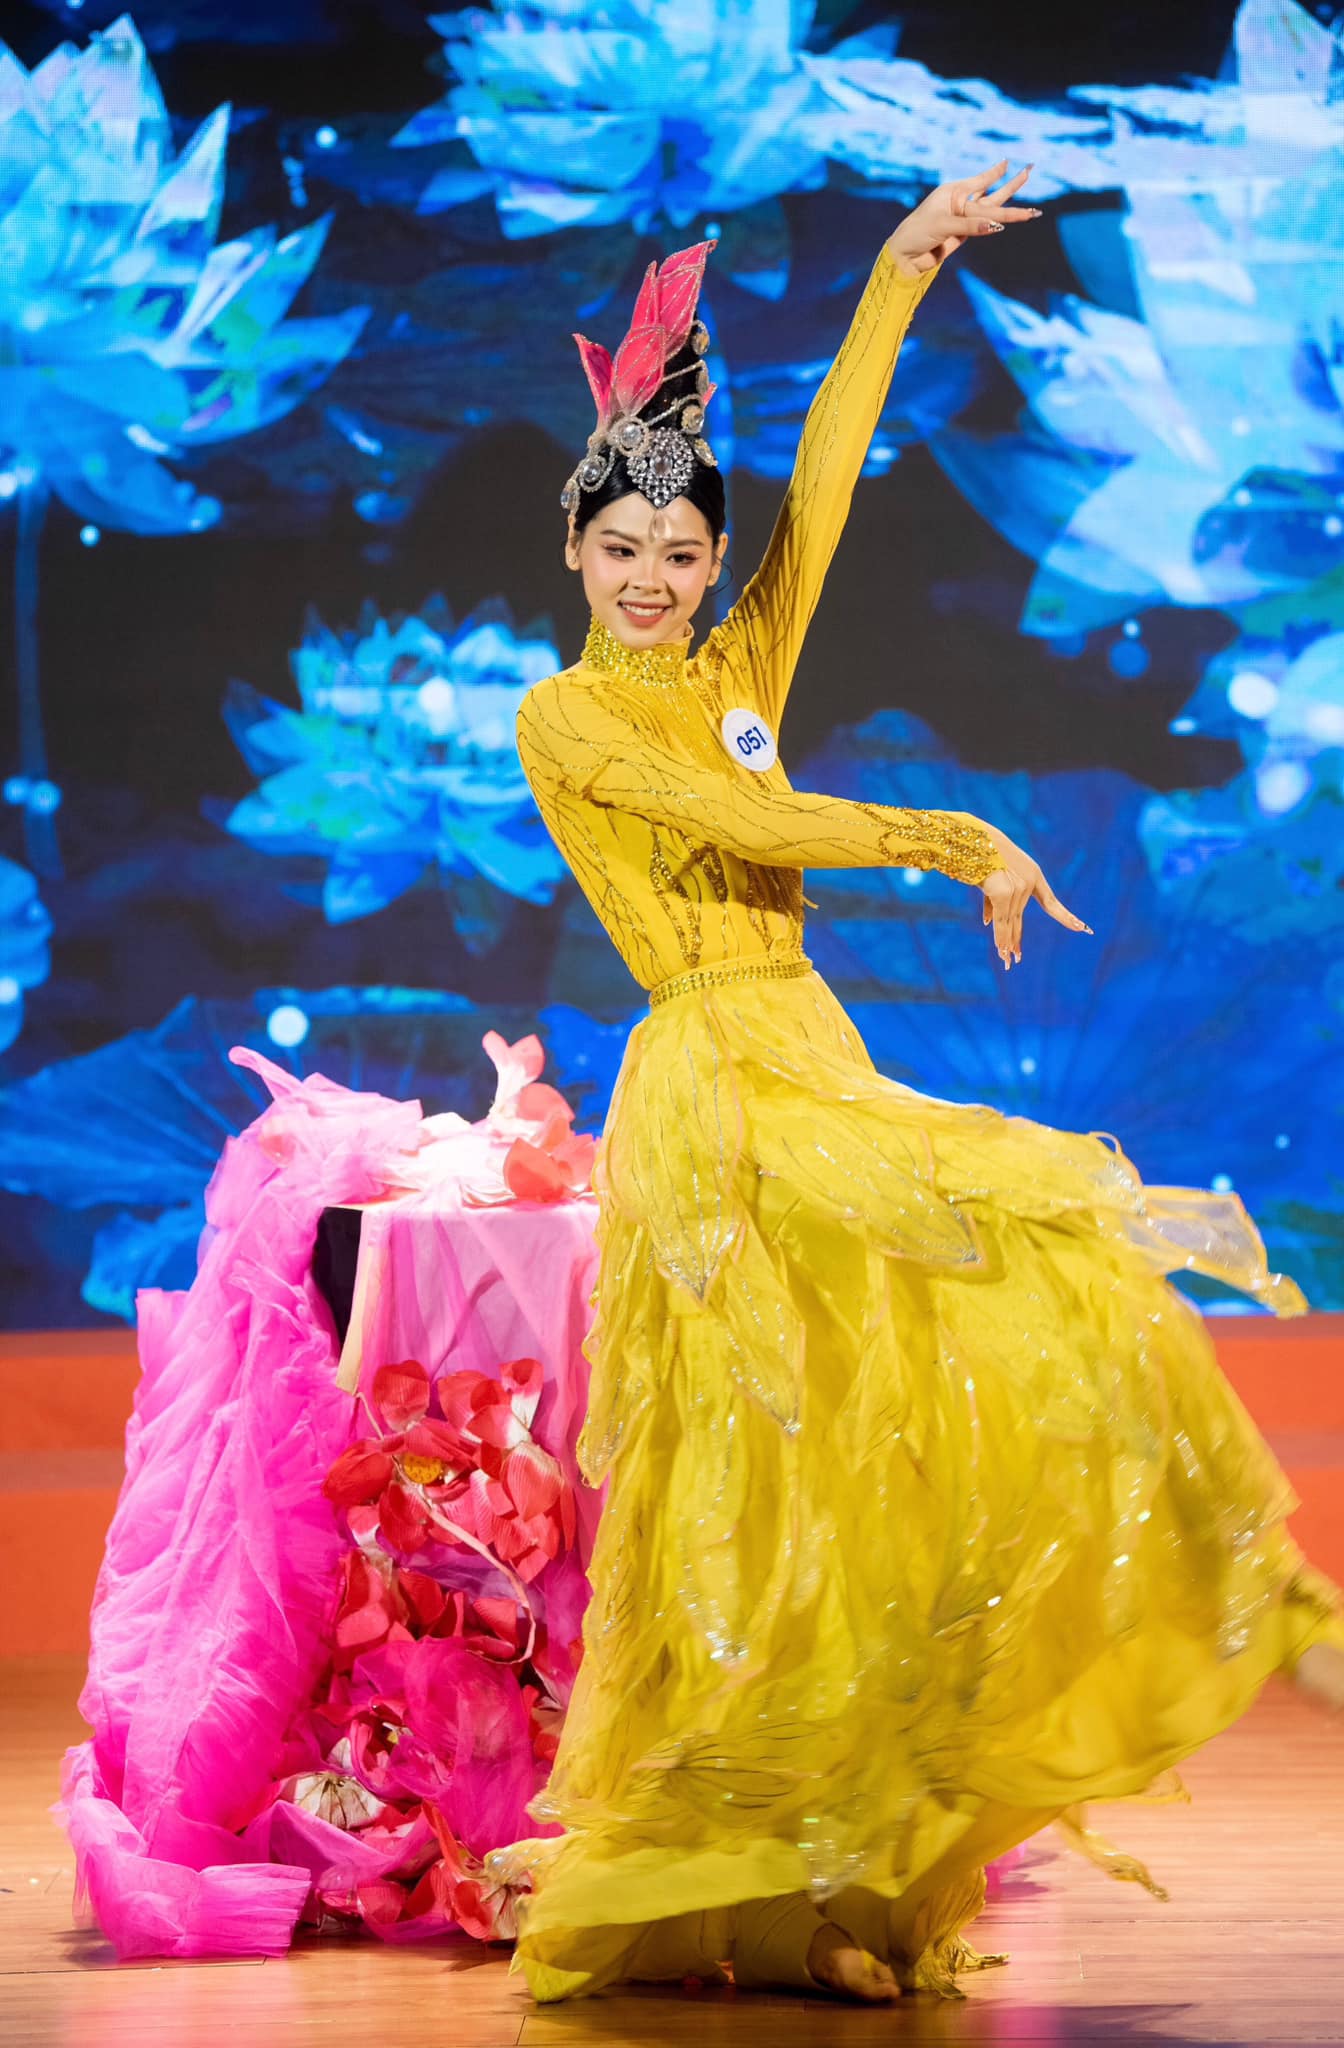 VĐV bóng chuyền có hình thể hạn chế dù lọt thẳng top 20 Miss World Vietnam - 6